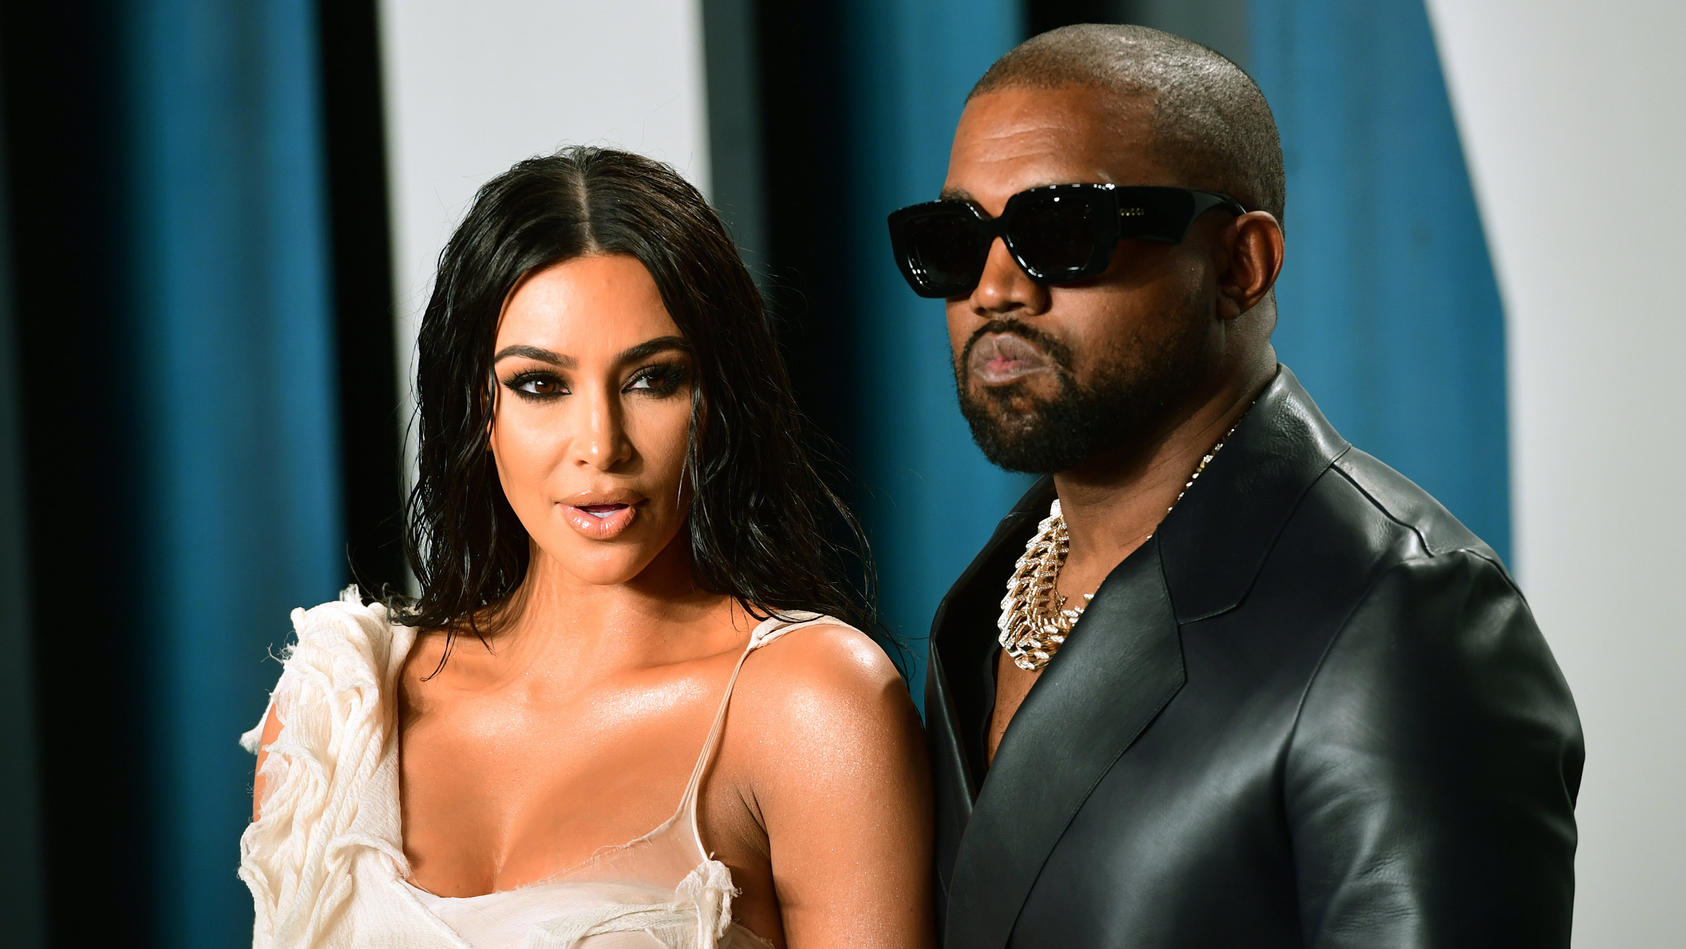 Anfang des Jahres reichte Kim Kardashian die Scheidung von Kanye West ein. Nun scheinen sich die beiden wieder anzunähern.